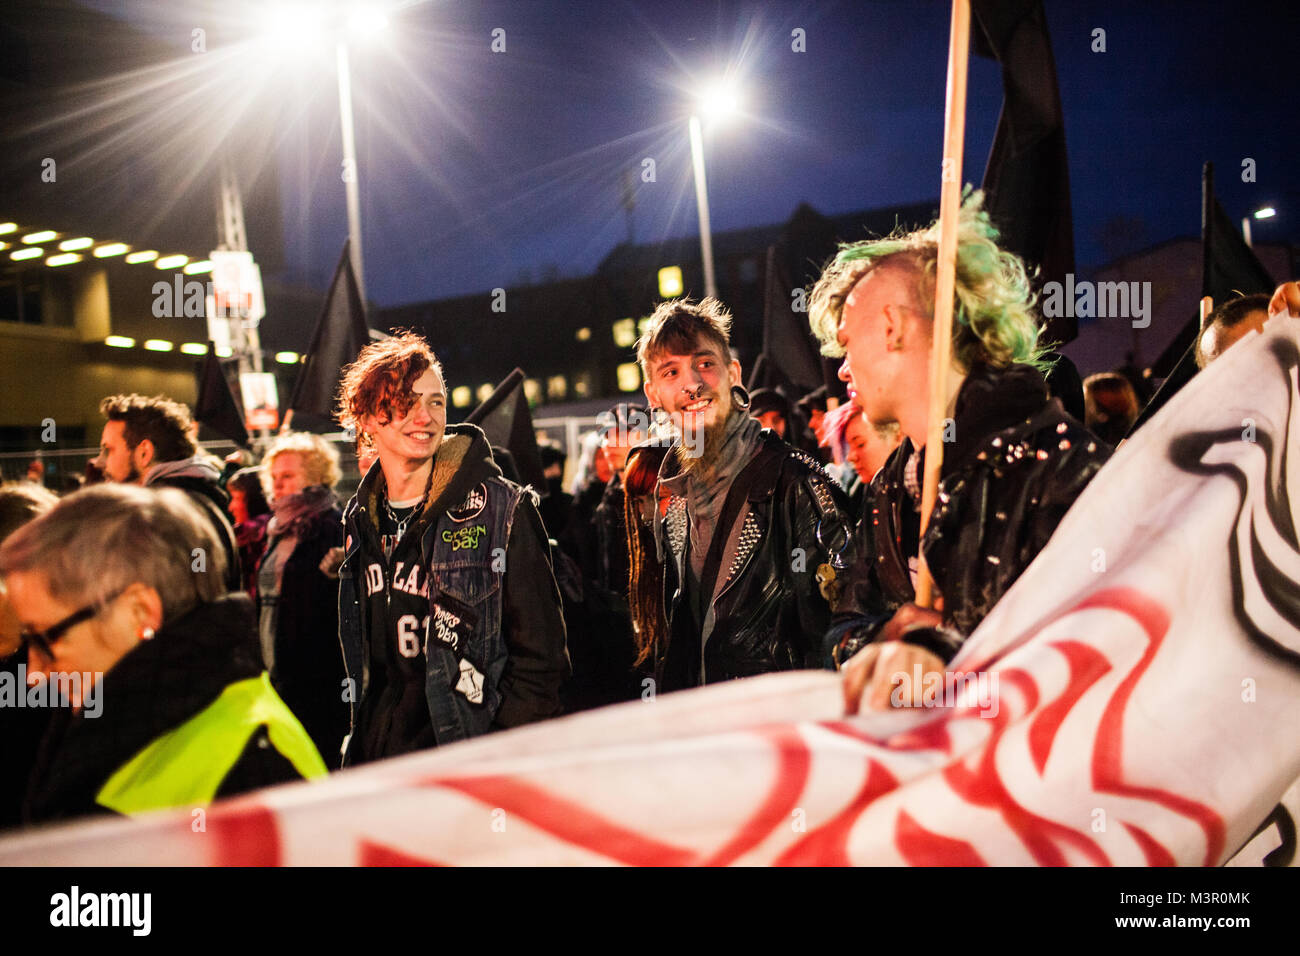 Die Atmosphäre unter den Teilnehmern aus verschiedenen linken Fraktionen und anarchistischen Fraktionen aus Kopenhagen - hier 3 lächelnd Punkrocker. Dänemark 2013. Stockfoto